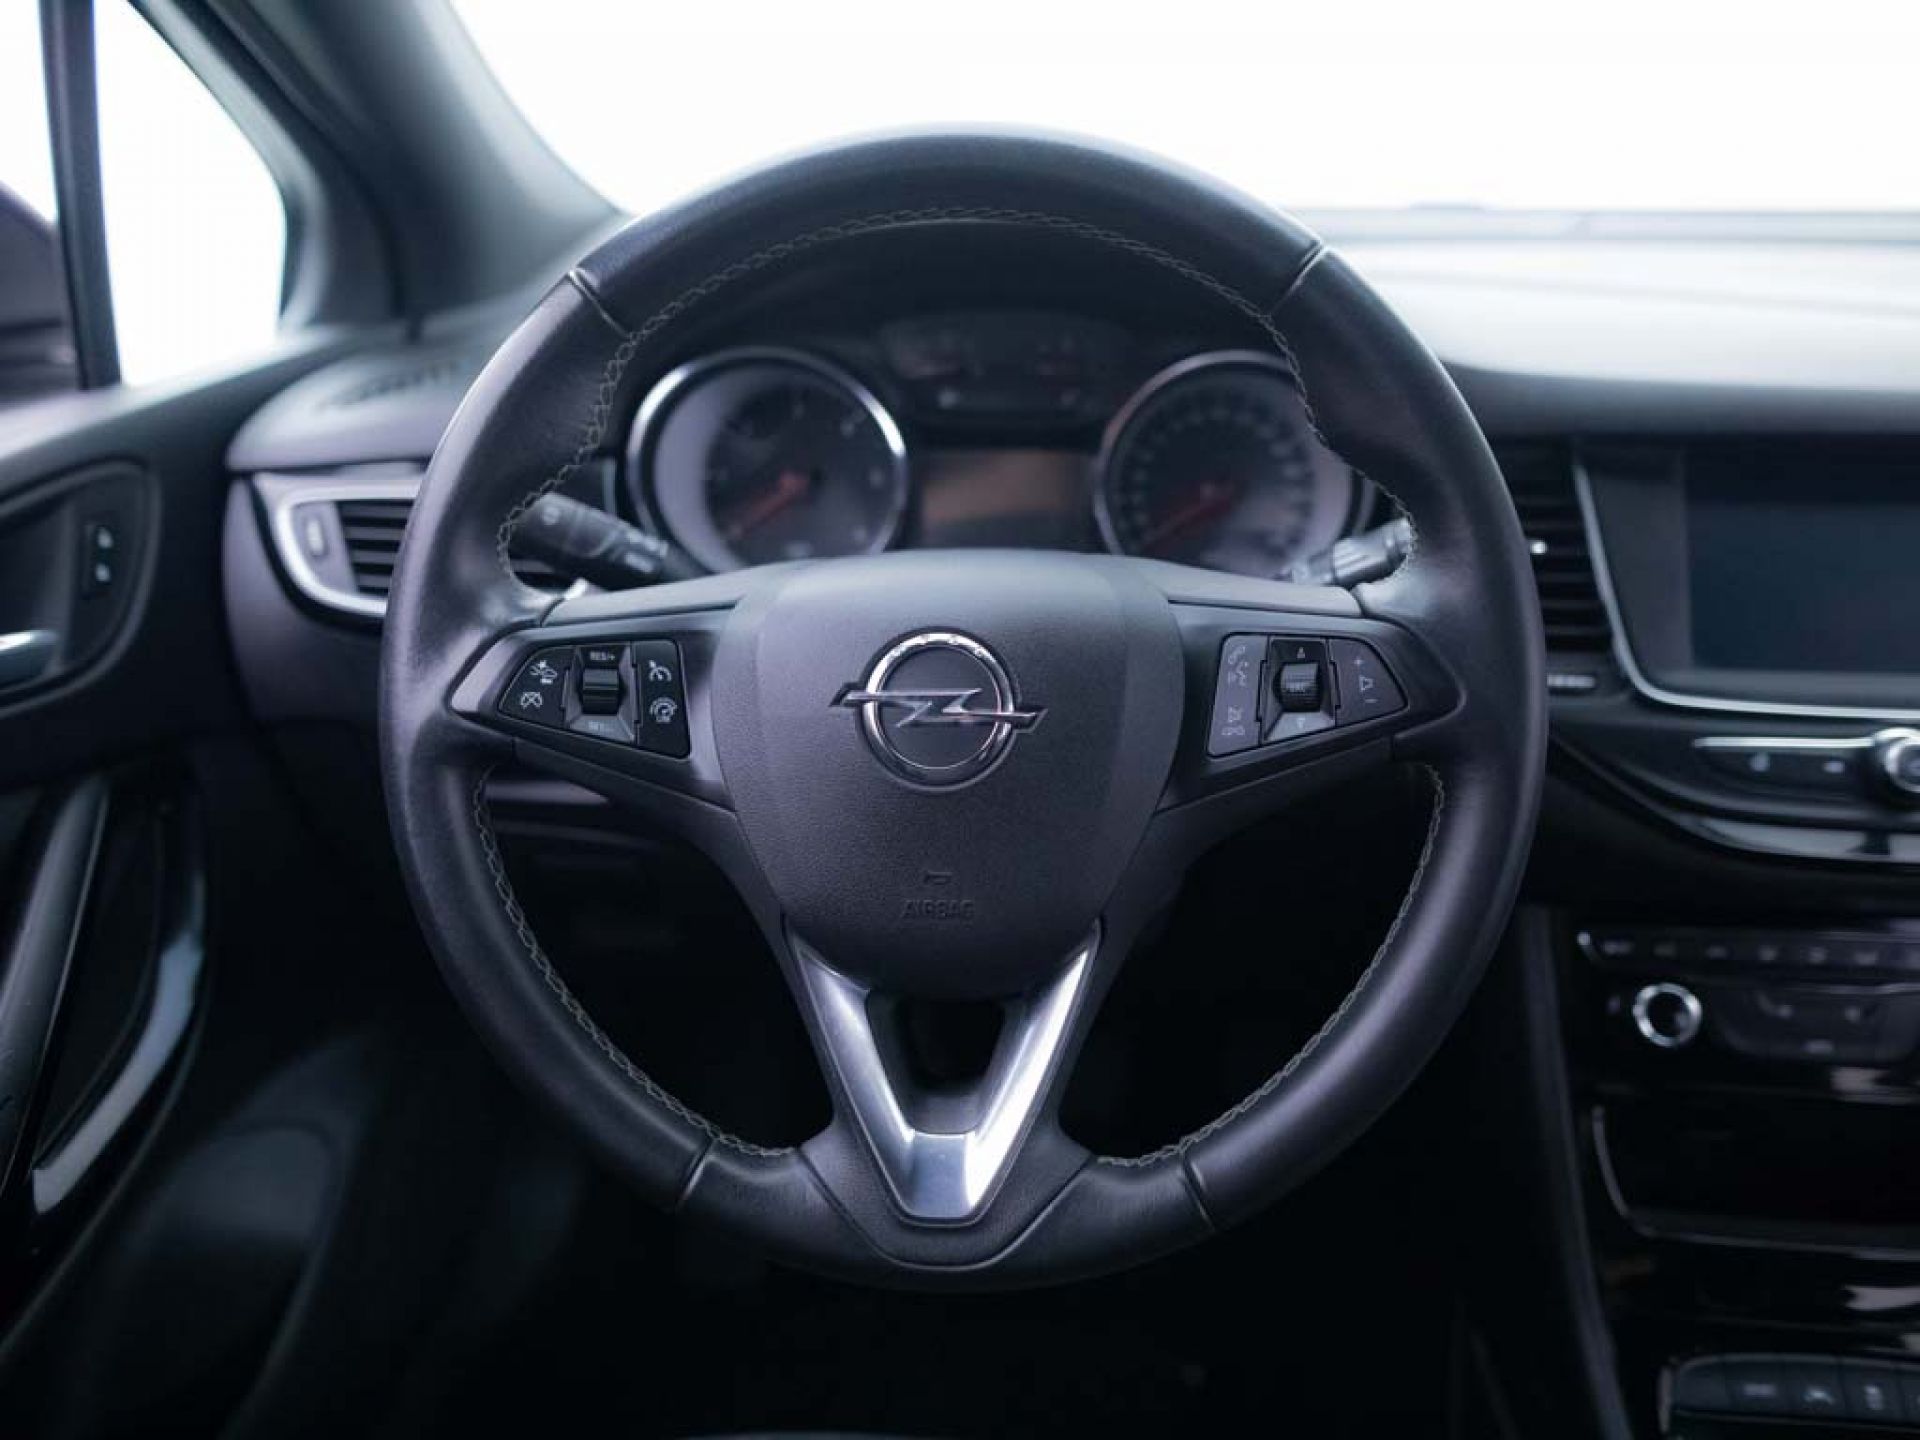 Opel Astra 1.6 CDTi 81kW (110CV) Dynamic